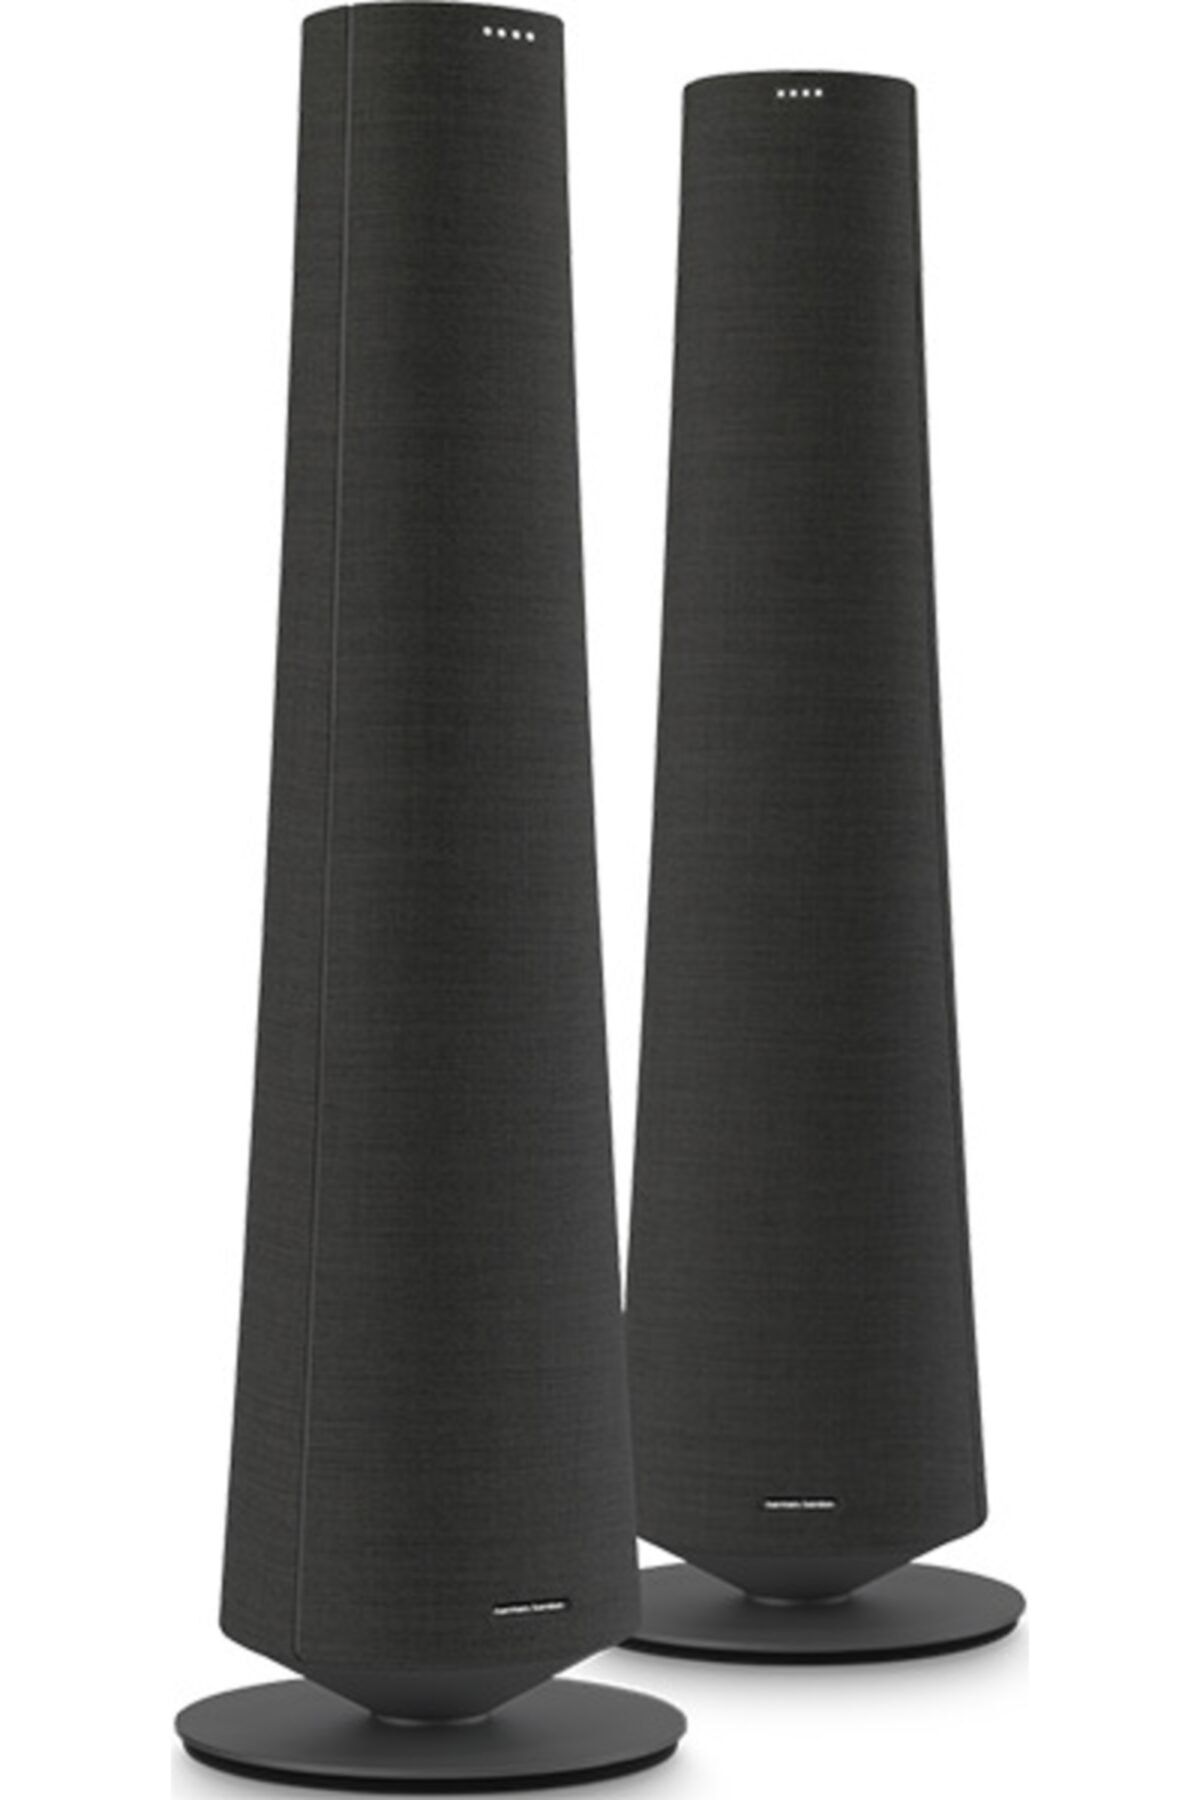 Harman Kardon Citation Tower Kule Tipi Bluetooth Hoparlör – Siyah